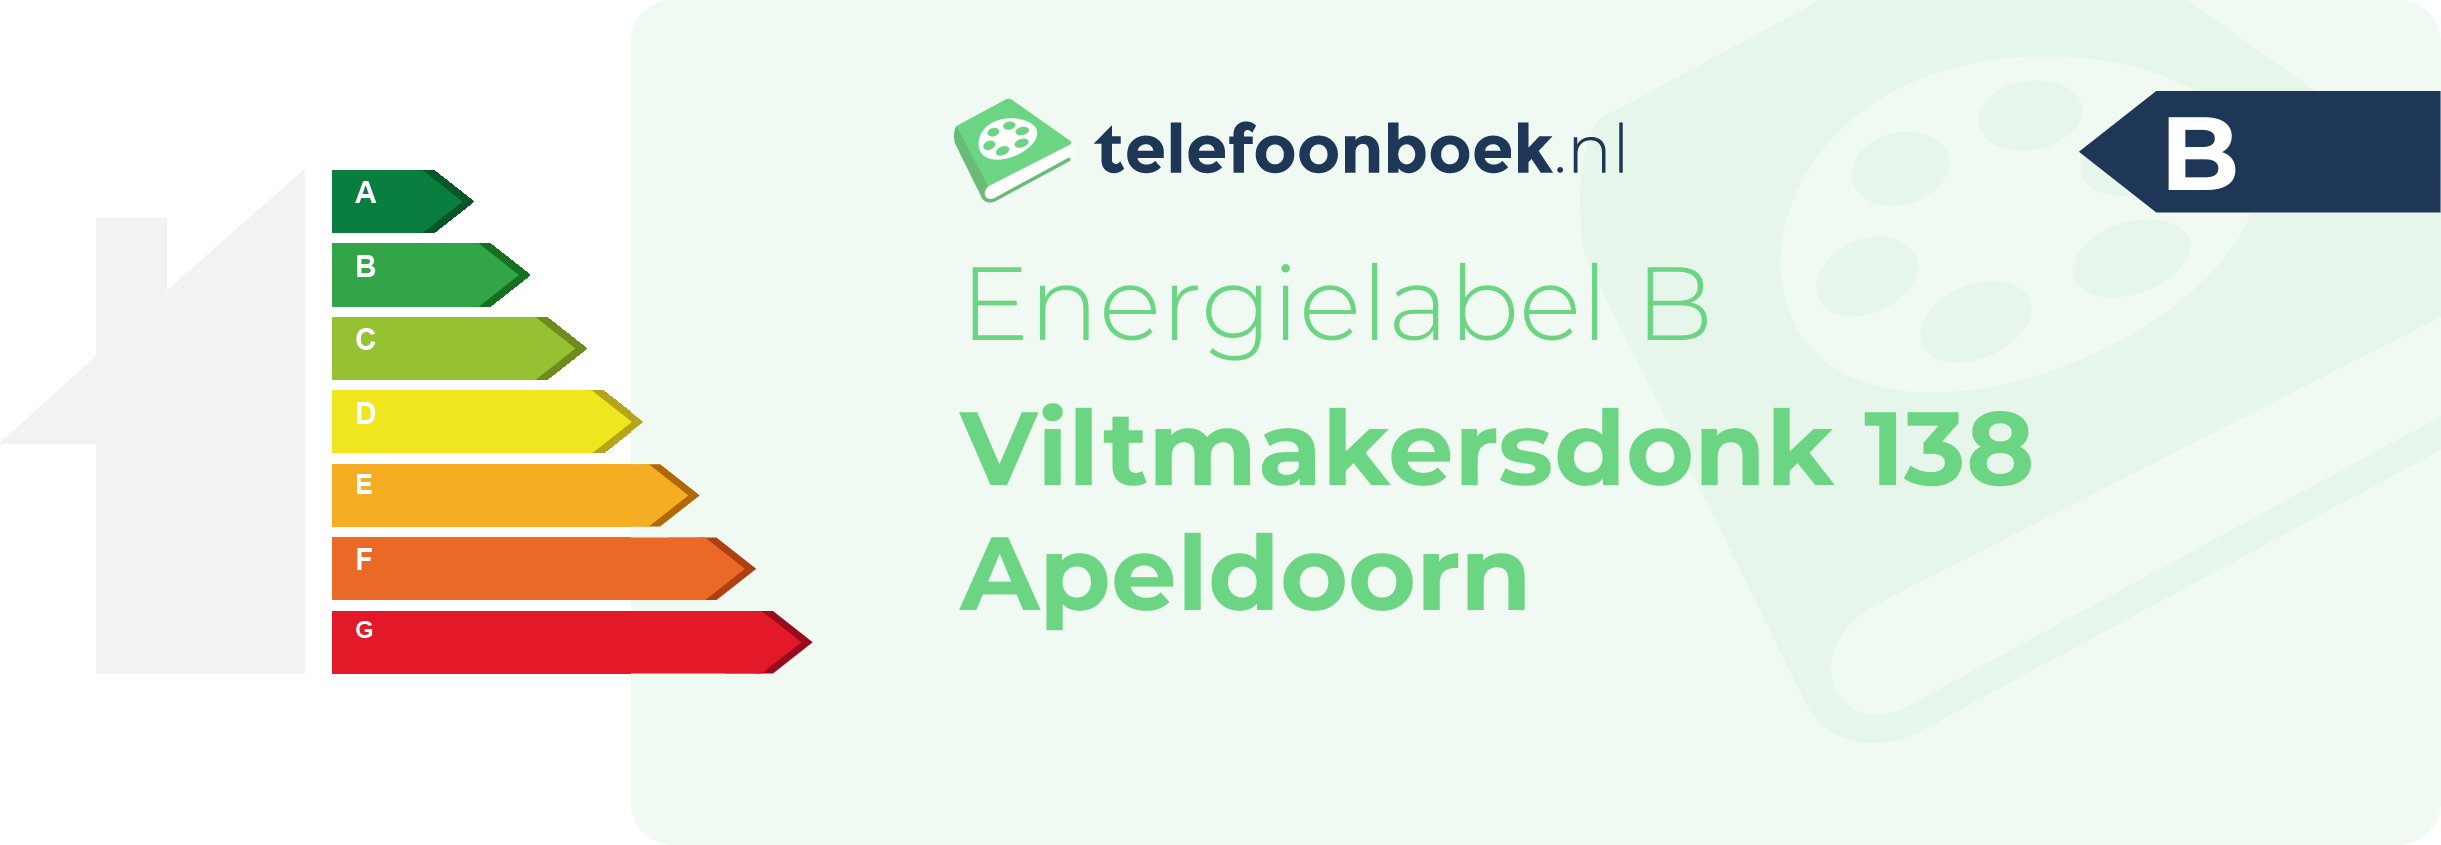 Energielabel Viltmakersdonk 138 Apeldoorn